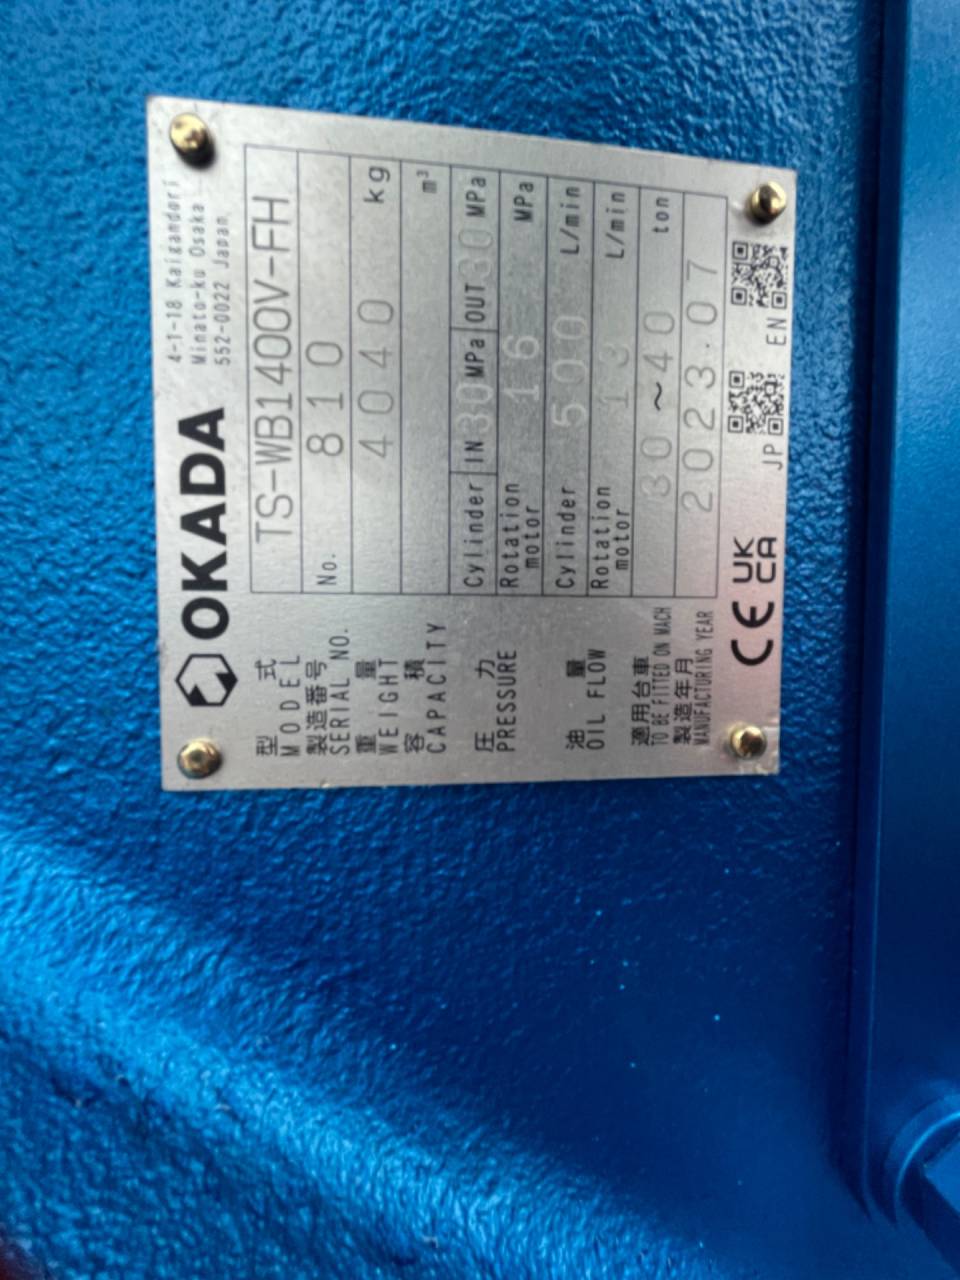 オカダアイヨン1.2用大割機TSWB1400 VHF入荷